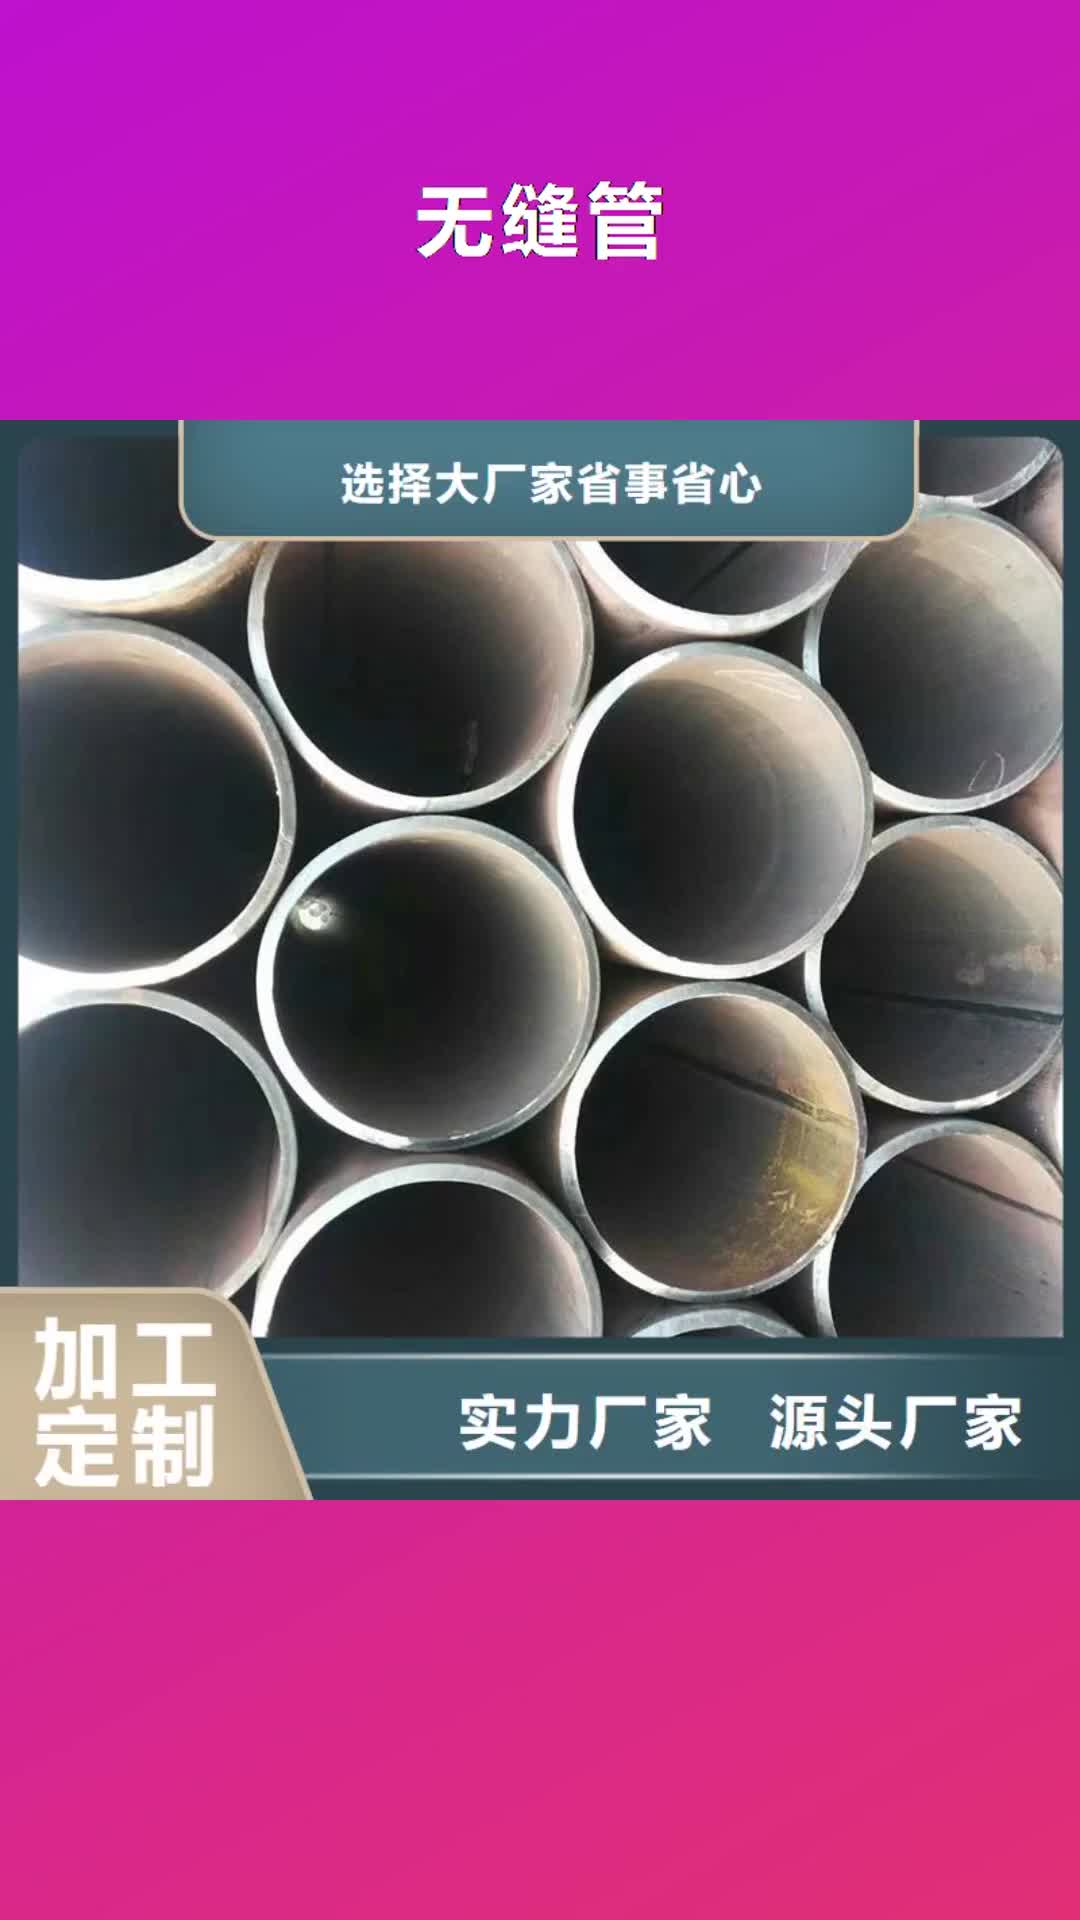 江苏【无缝管】,大口径不锈钢管符合行业标准